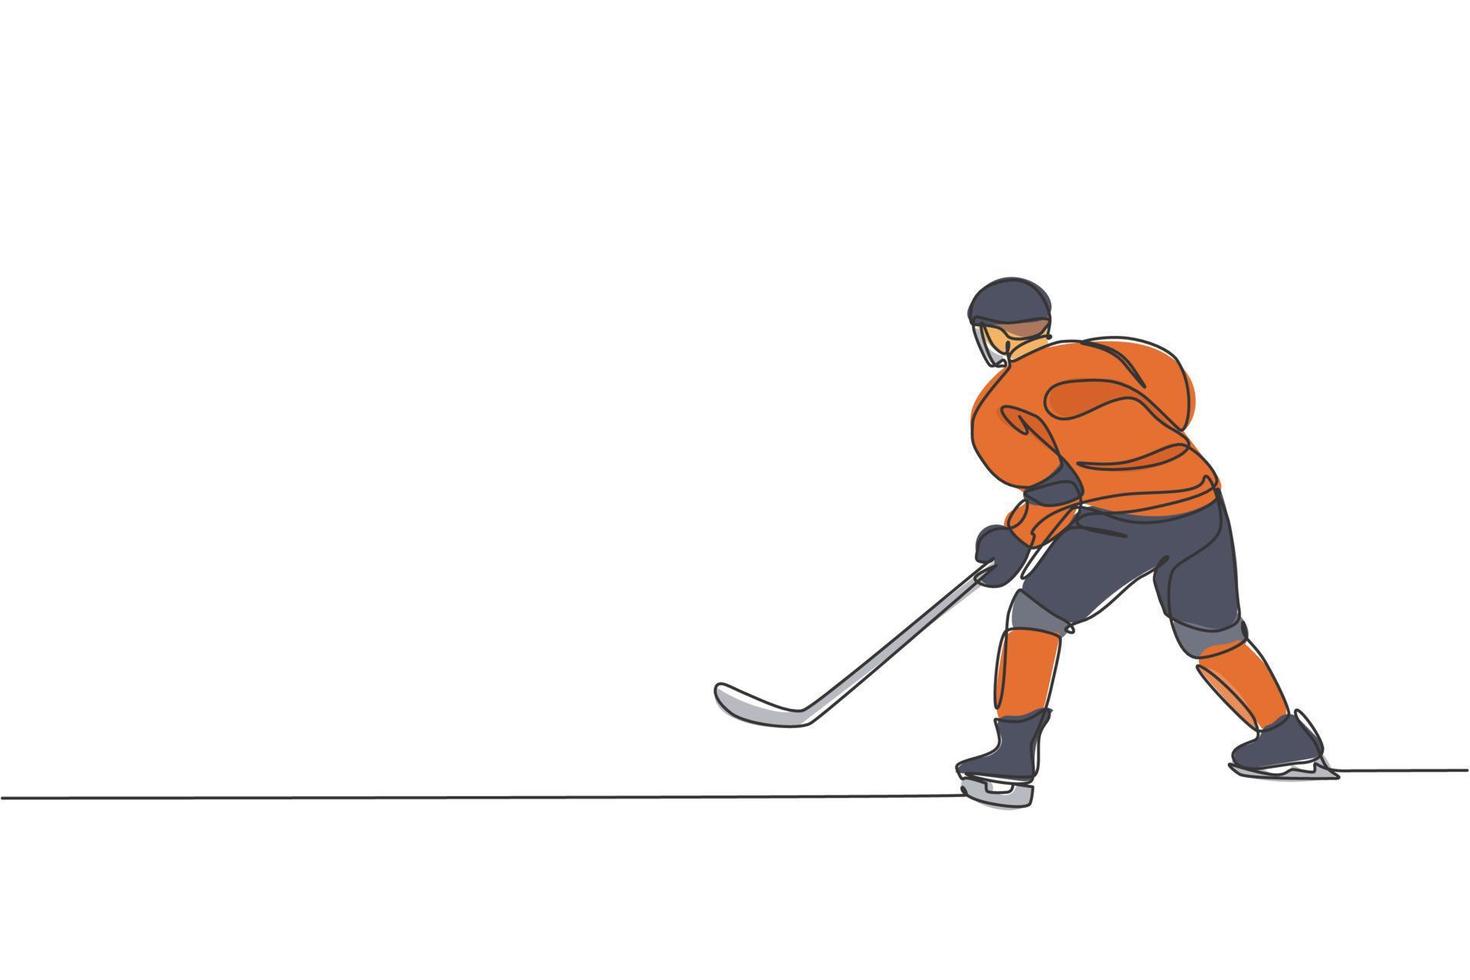 één enkele lijntekening van jonge ijshockeyspeler in actie om een competitief spel te spelen op de grafische vectorillustratie van het ijsbaanstadion. sporttoernooi concept. modern ononderbroken lijntekeningontwerp vector